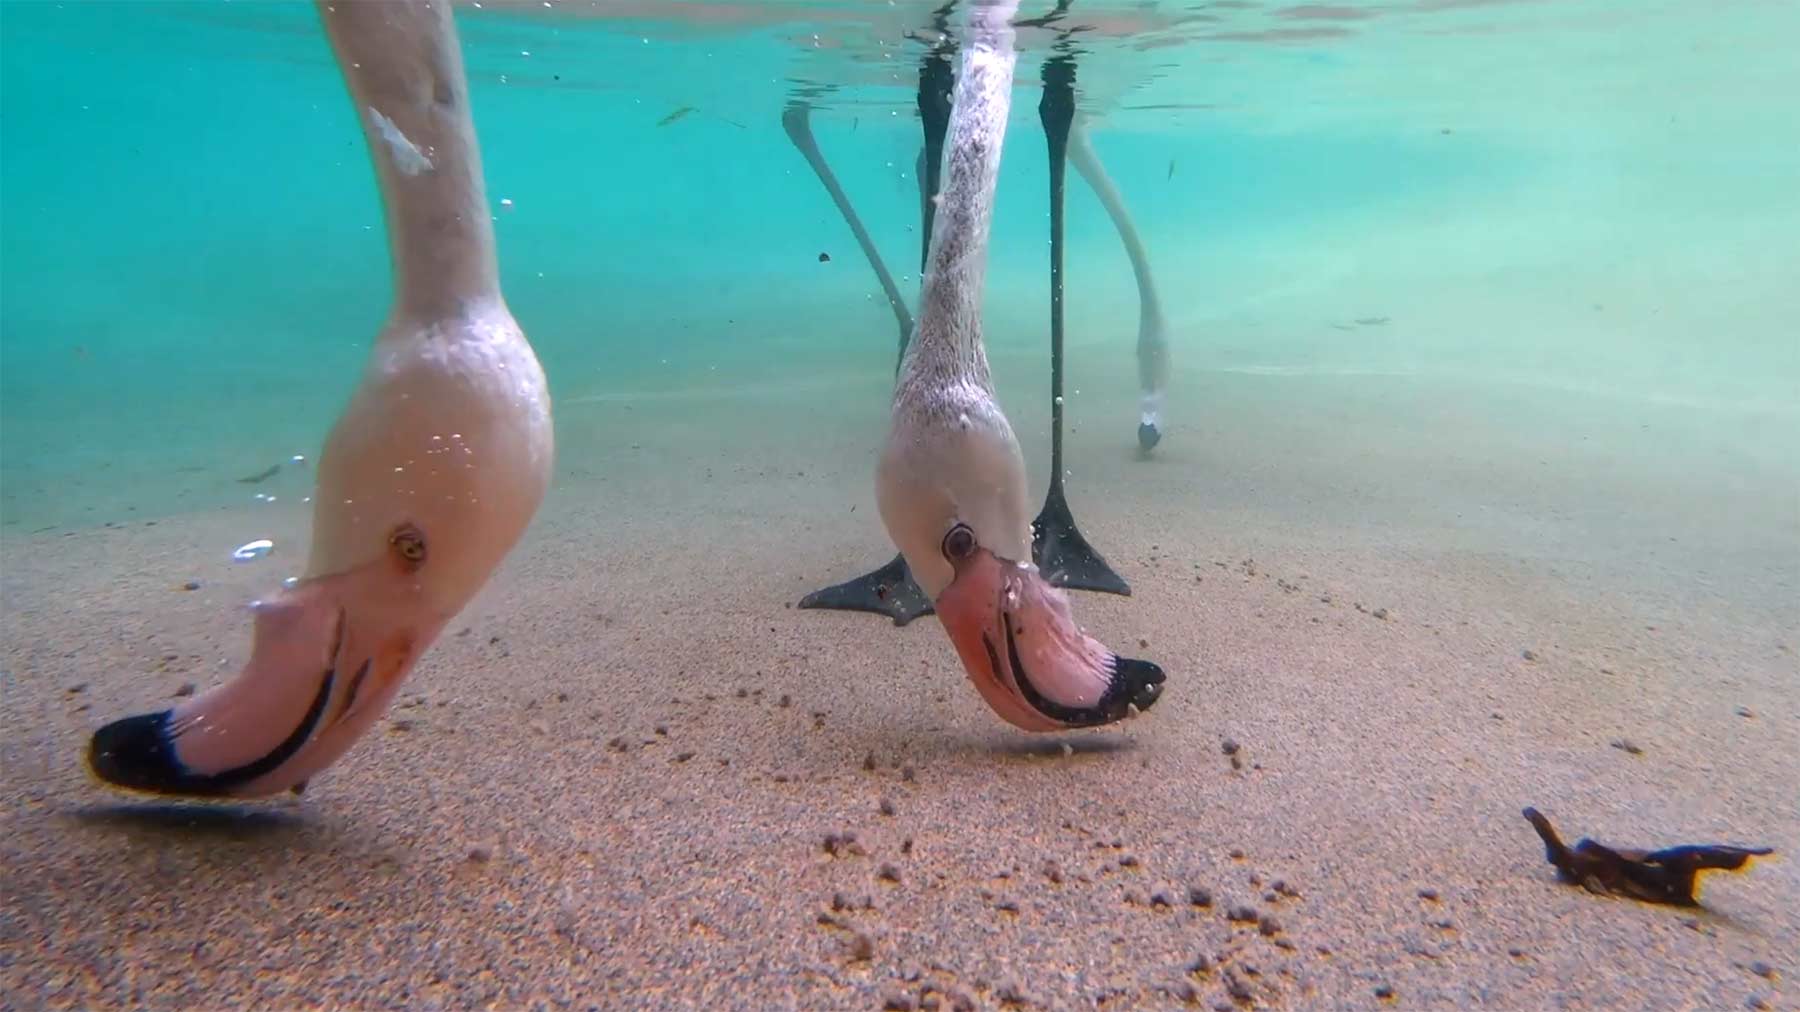 Flamingo-Unterwasser-Fütterung Flamingo-unterwasser-fuetterung 